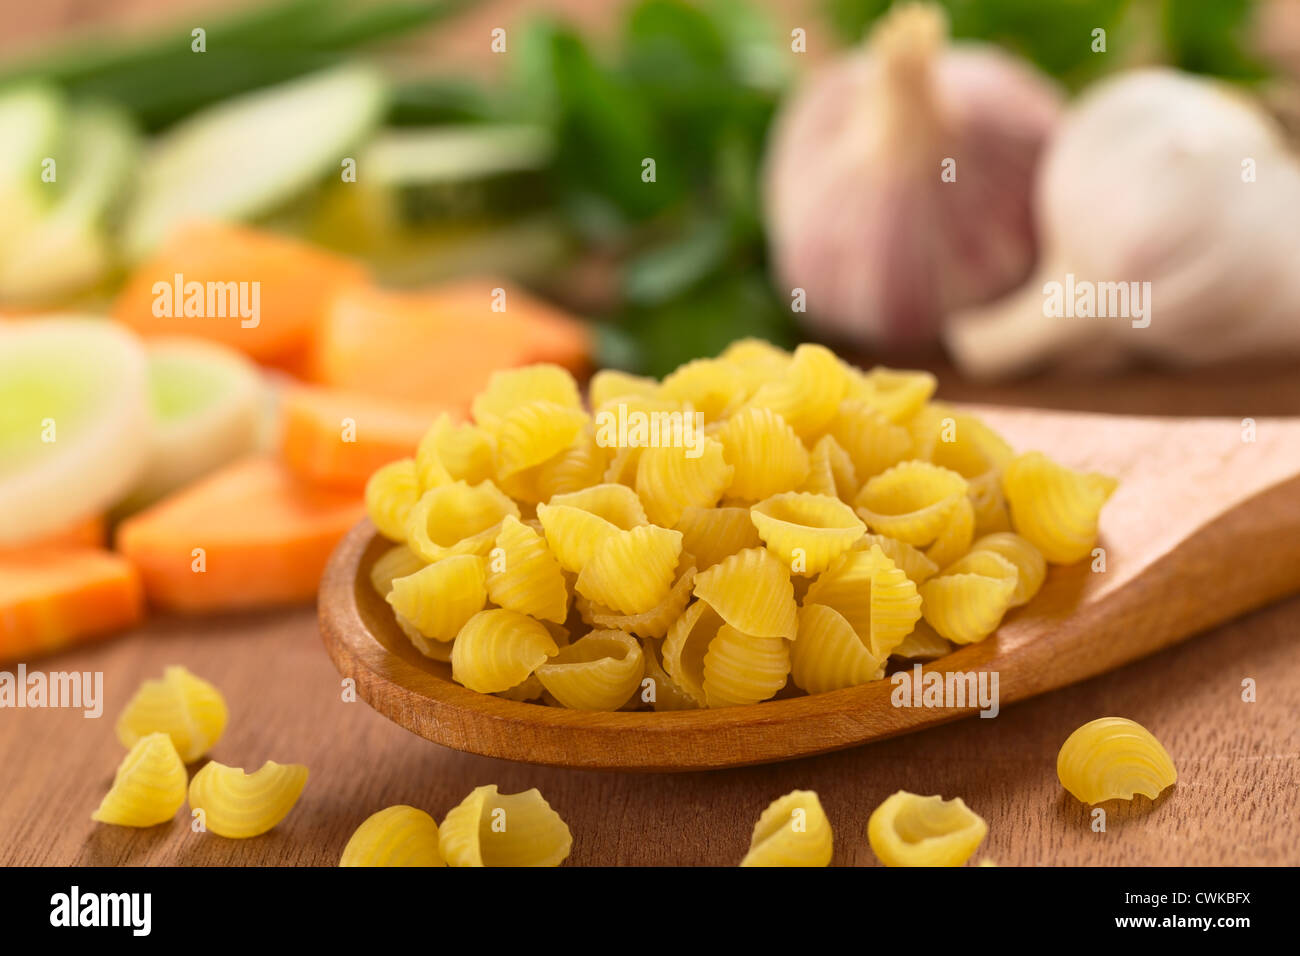 Materie di shell o di pasta conchiglioni sul cucchiaio di legno con verdura cruda (carota, porro, zucchine, aglio) nella parte posteriore Foto Stock